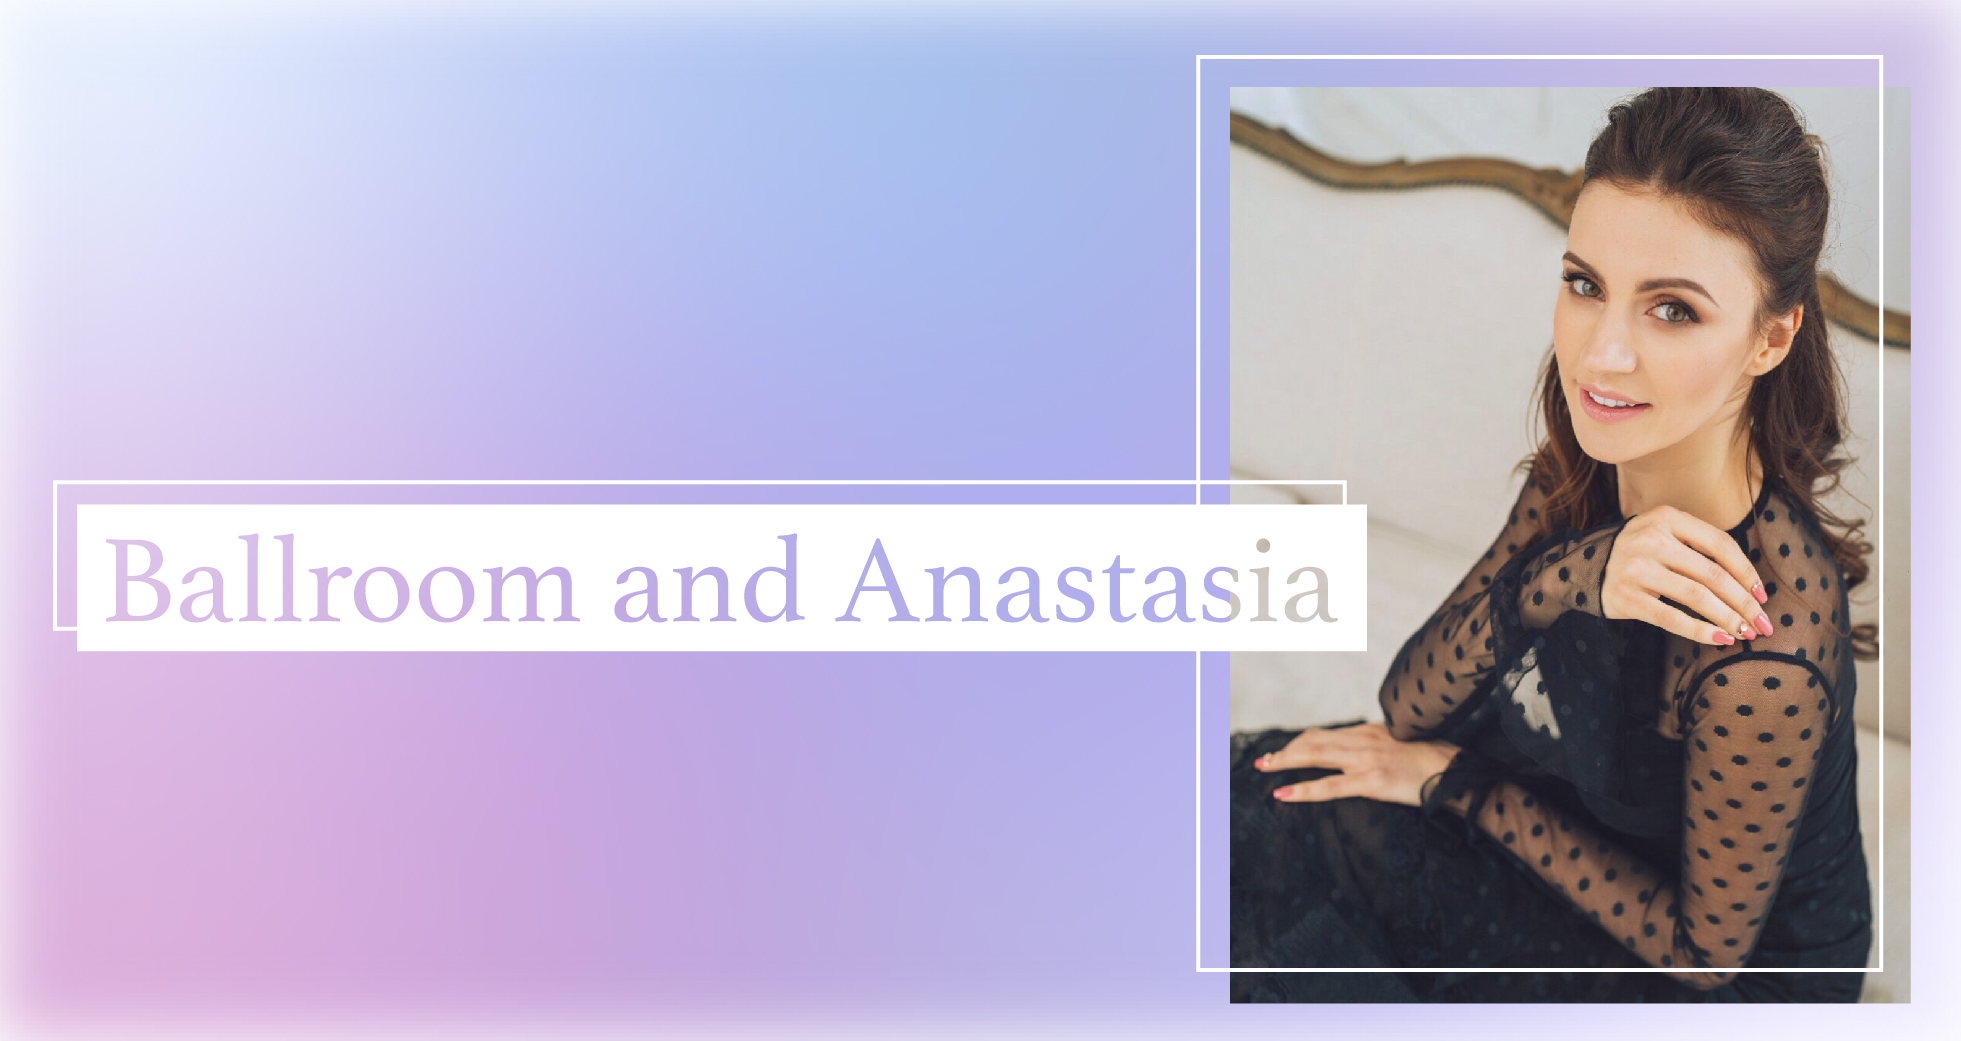 Ballroom and Anastasia